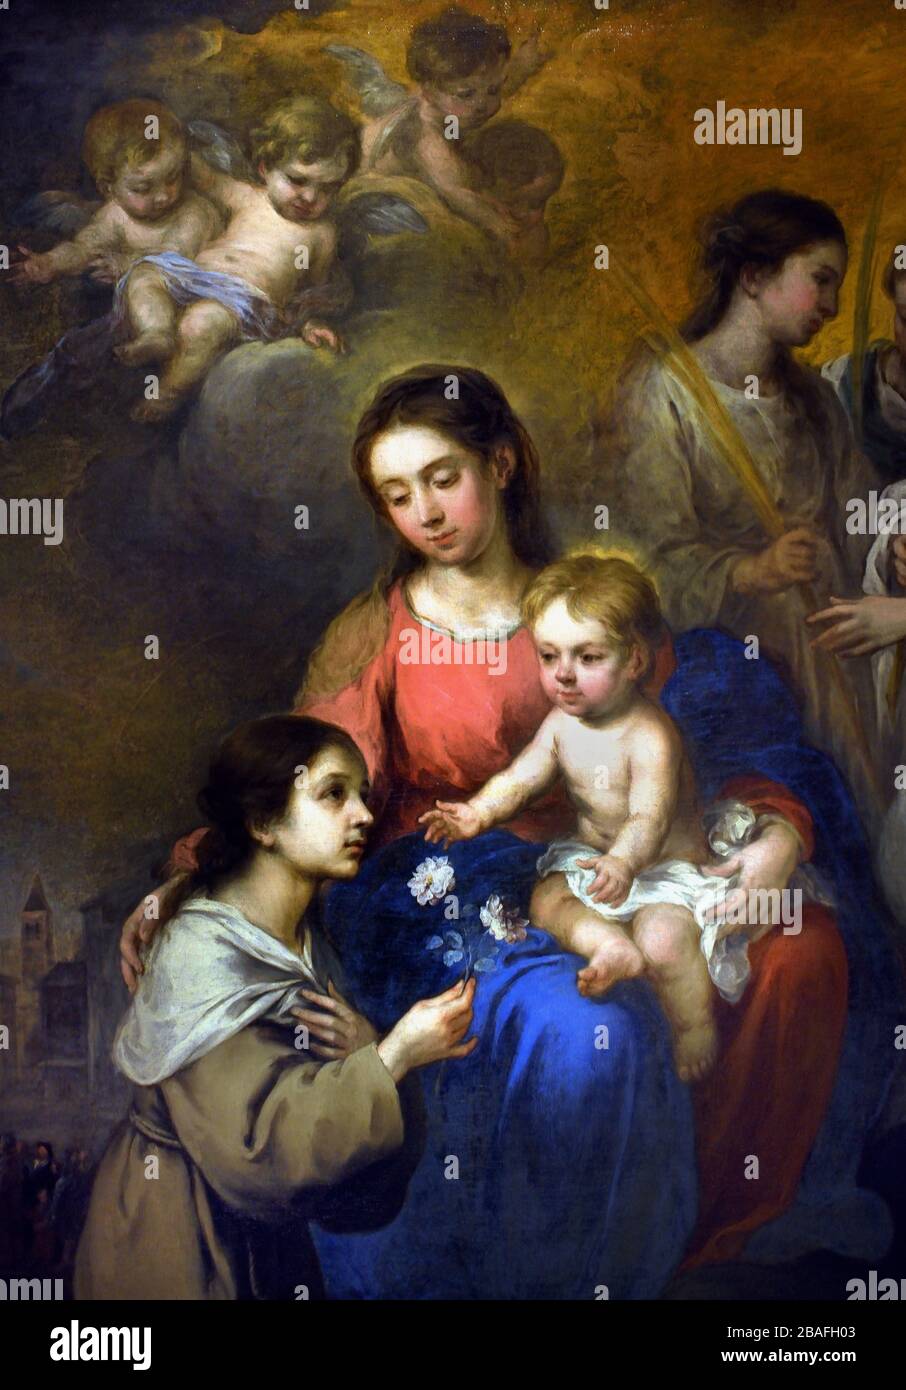 La Virgen con el Niño con Santa Rosa de Viterbo 1670 por Bartolomé Esteban Murillo 1617-1782 España pintor barroco español. Foto de stock